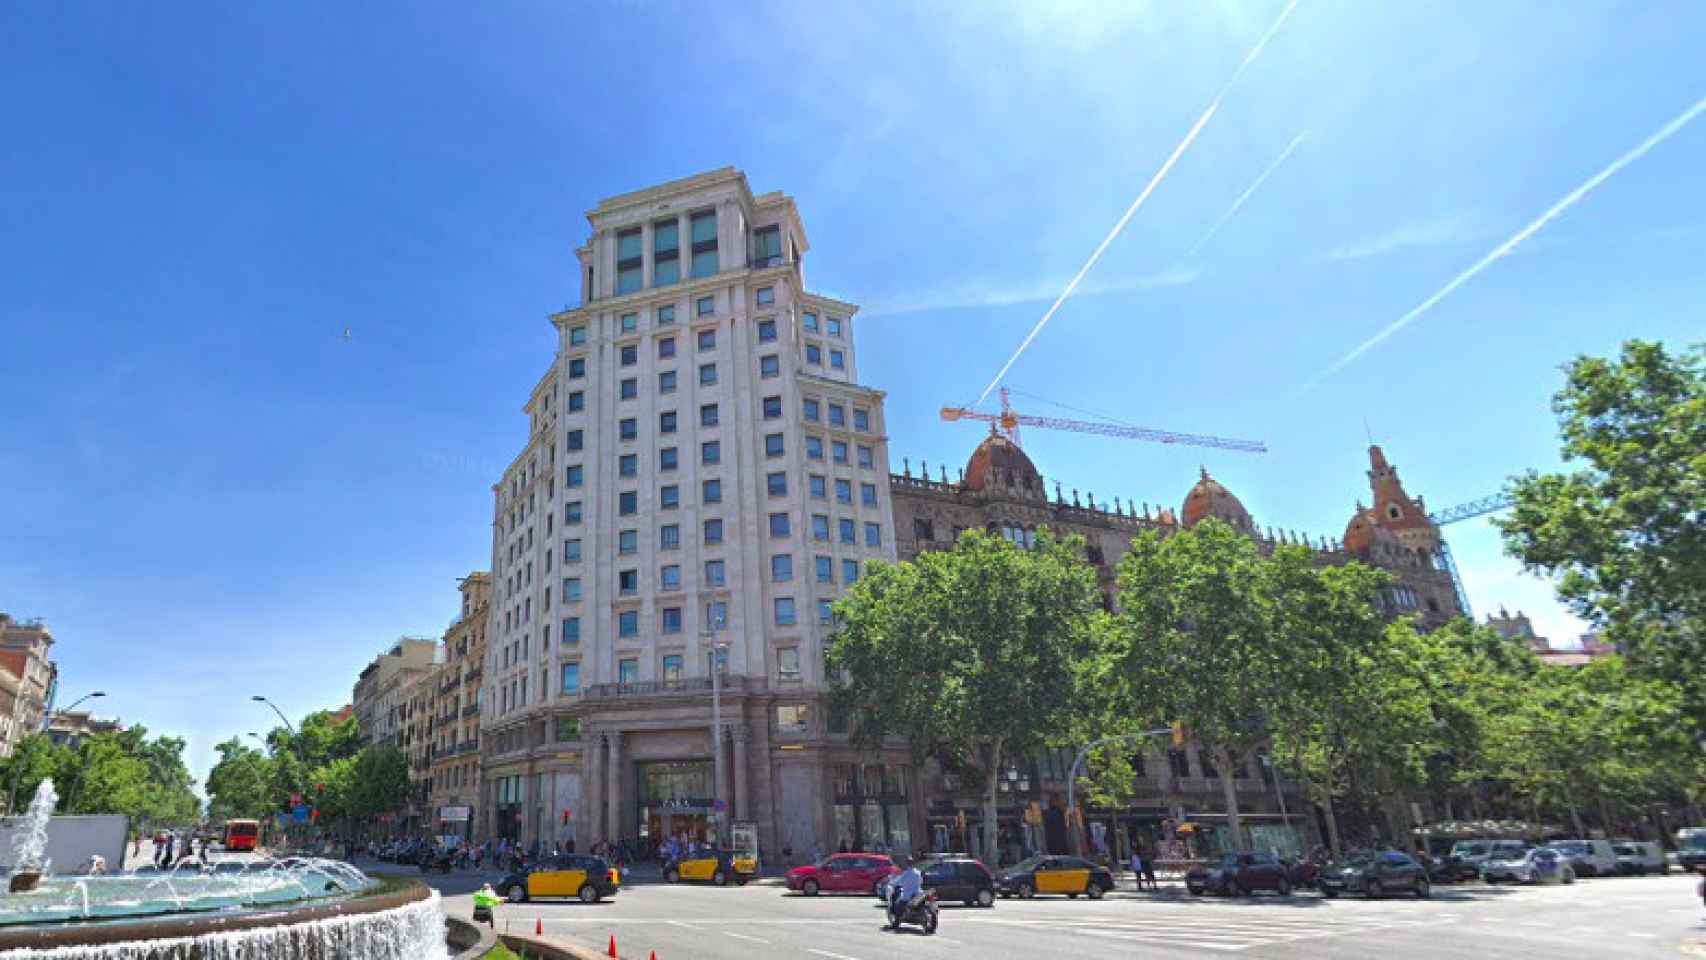 Edificio donde se encuentra el Consulado argentino en Barcelona